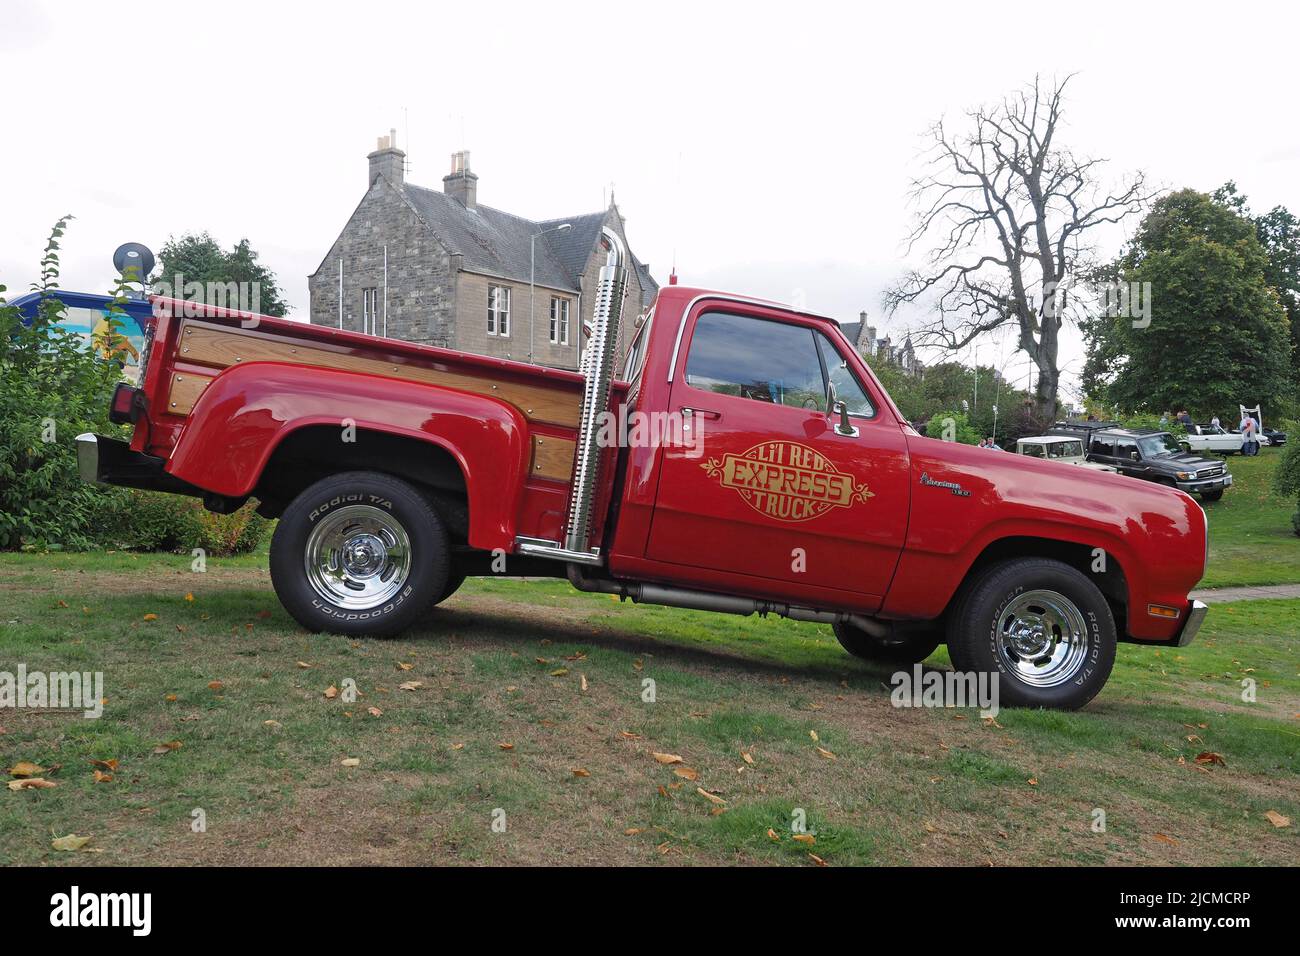 Dodge 'Lil Red Express' Truck, basierend auf dem Pickup-Truck der D-Serie der 3.. Generation. Dies waren eine limitierte Auflage von sehr schnellen V8 Pickups aus dem Jahr 1978. Stockfoto